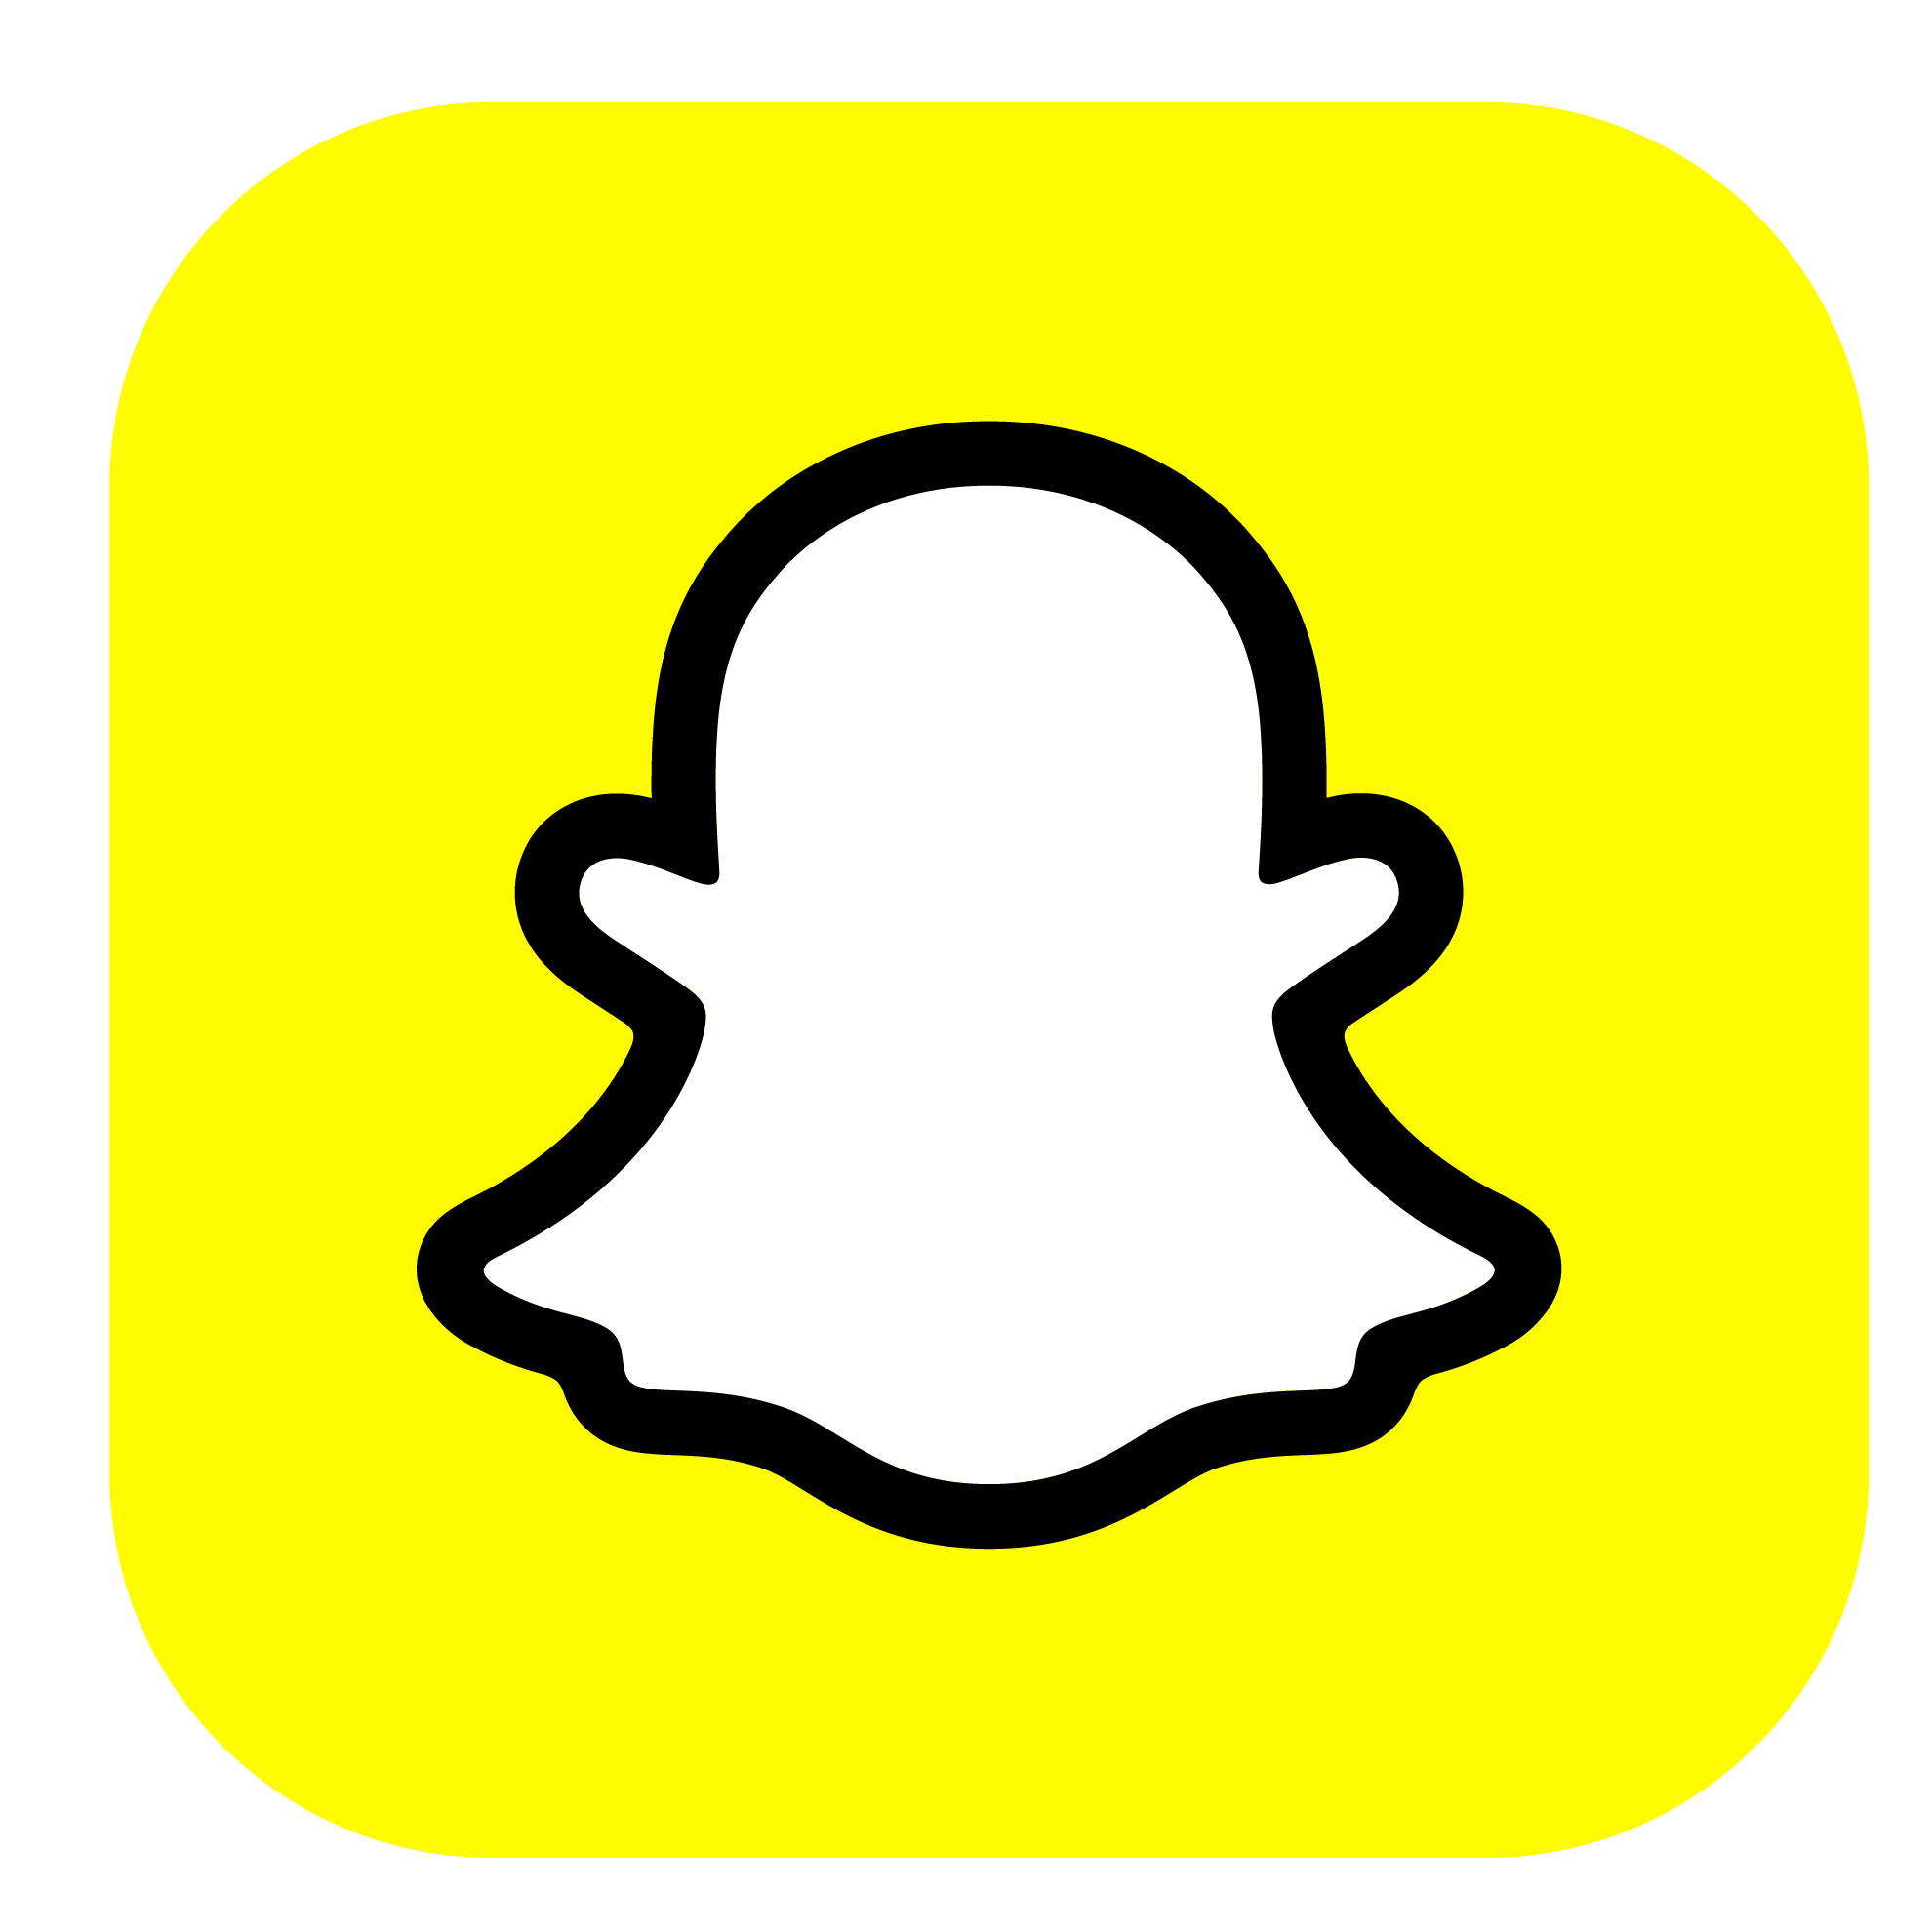 Logotipo Snapchat con tu recarga telefónica prepago Movistar ilimitado